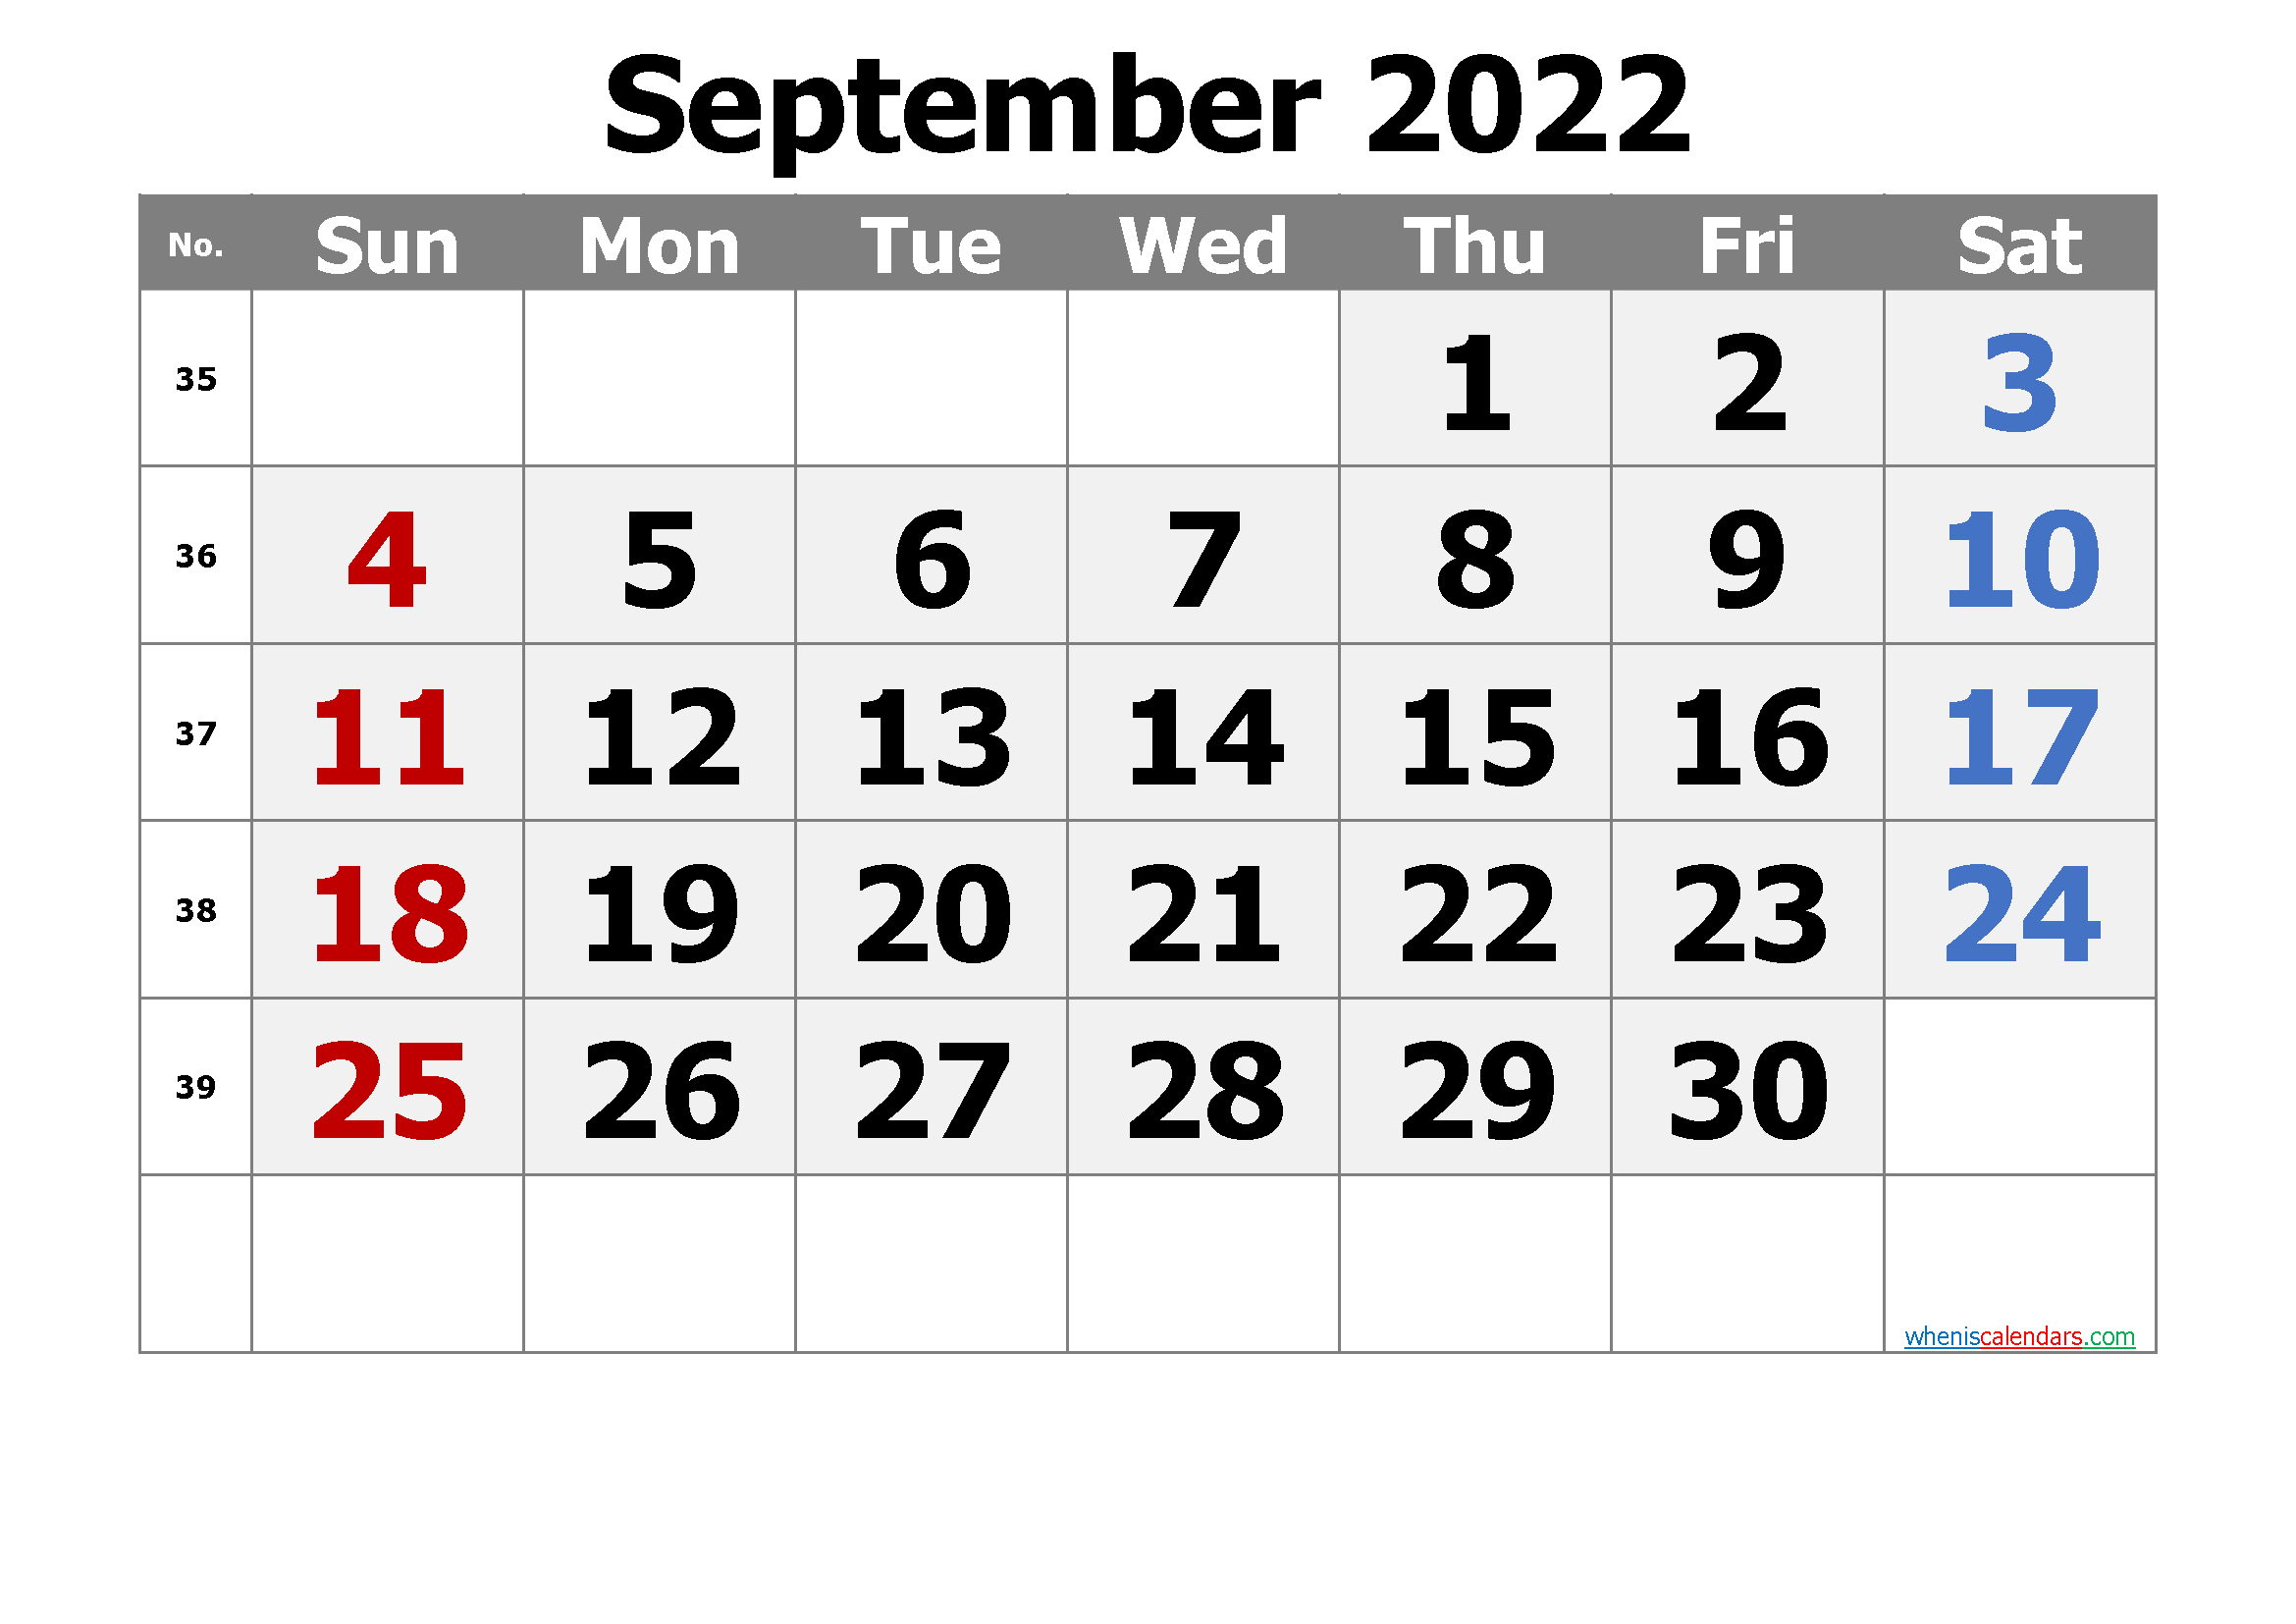 Fsu Uconn Spring Calendar Aug Sept 2022 Calendar Print November 